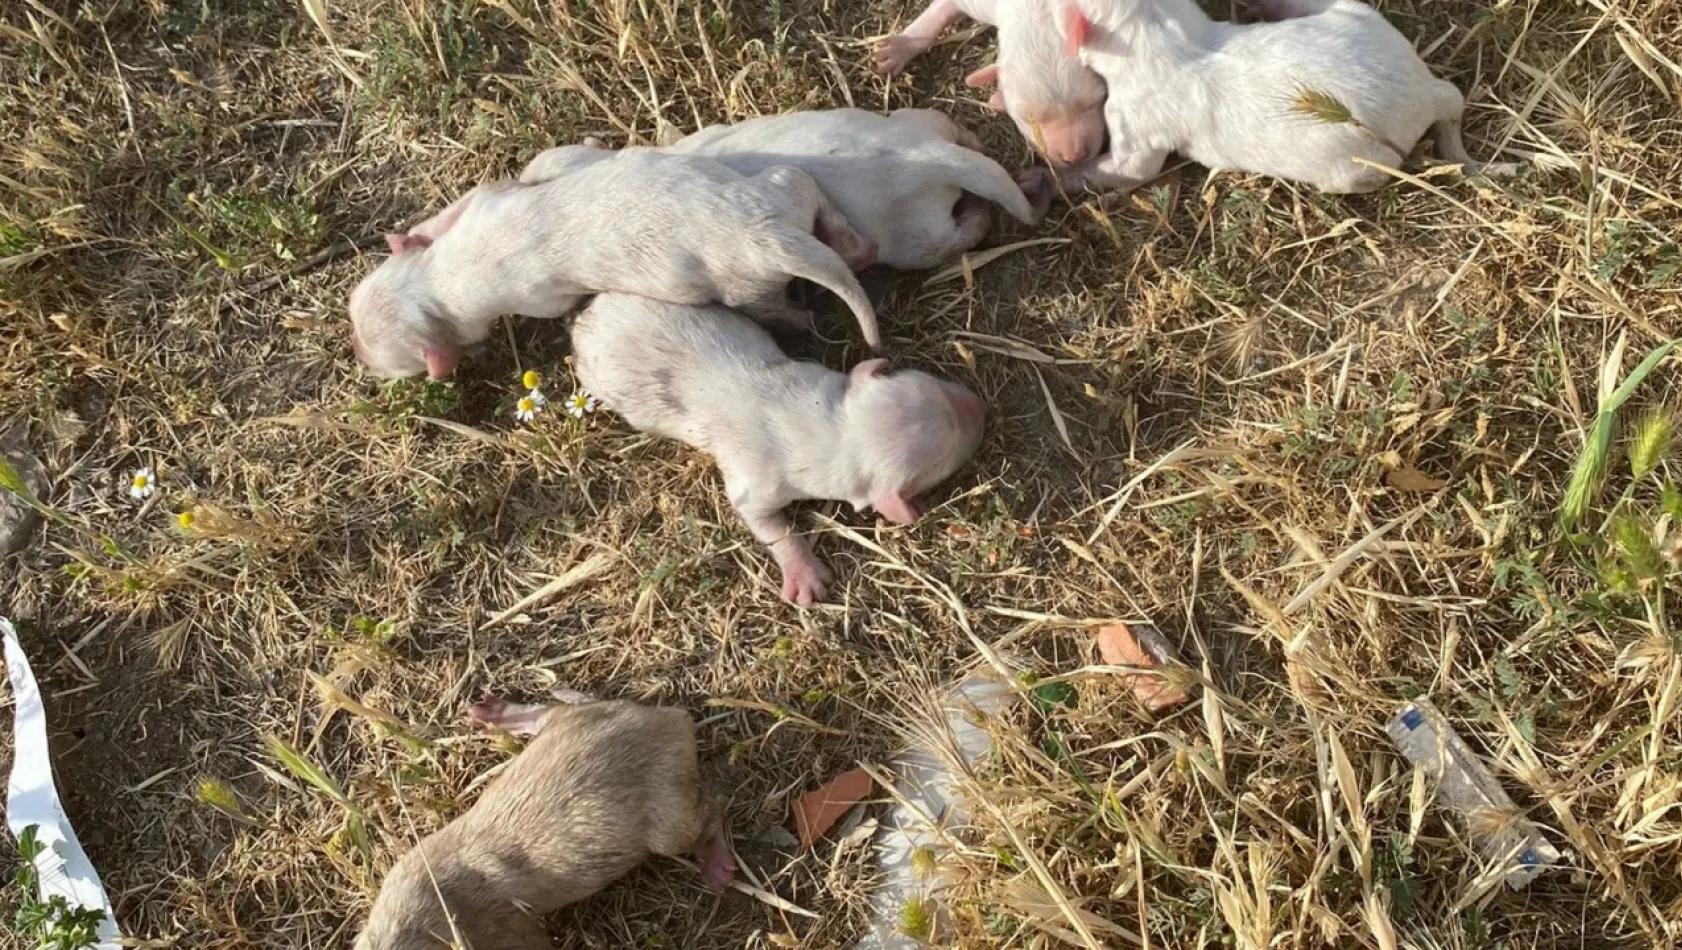 Manisa'da Çöp konteynerine atılan çuvaldan 6 köpek yavrusu çıktı